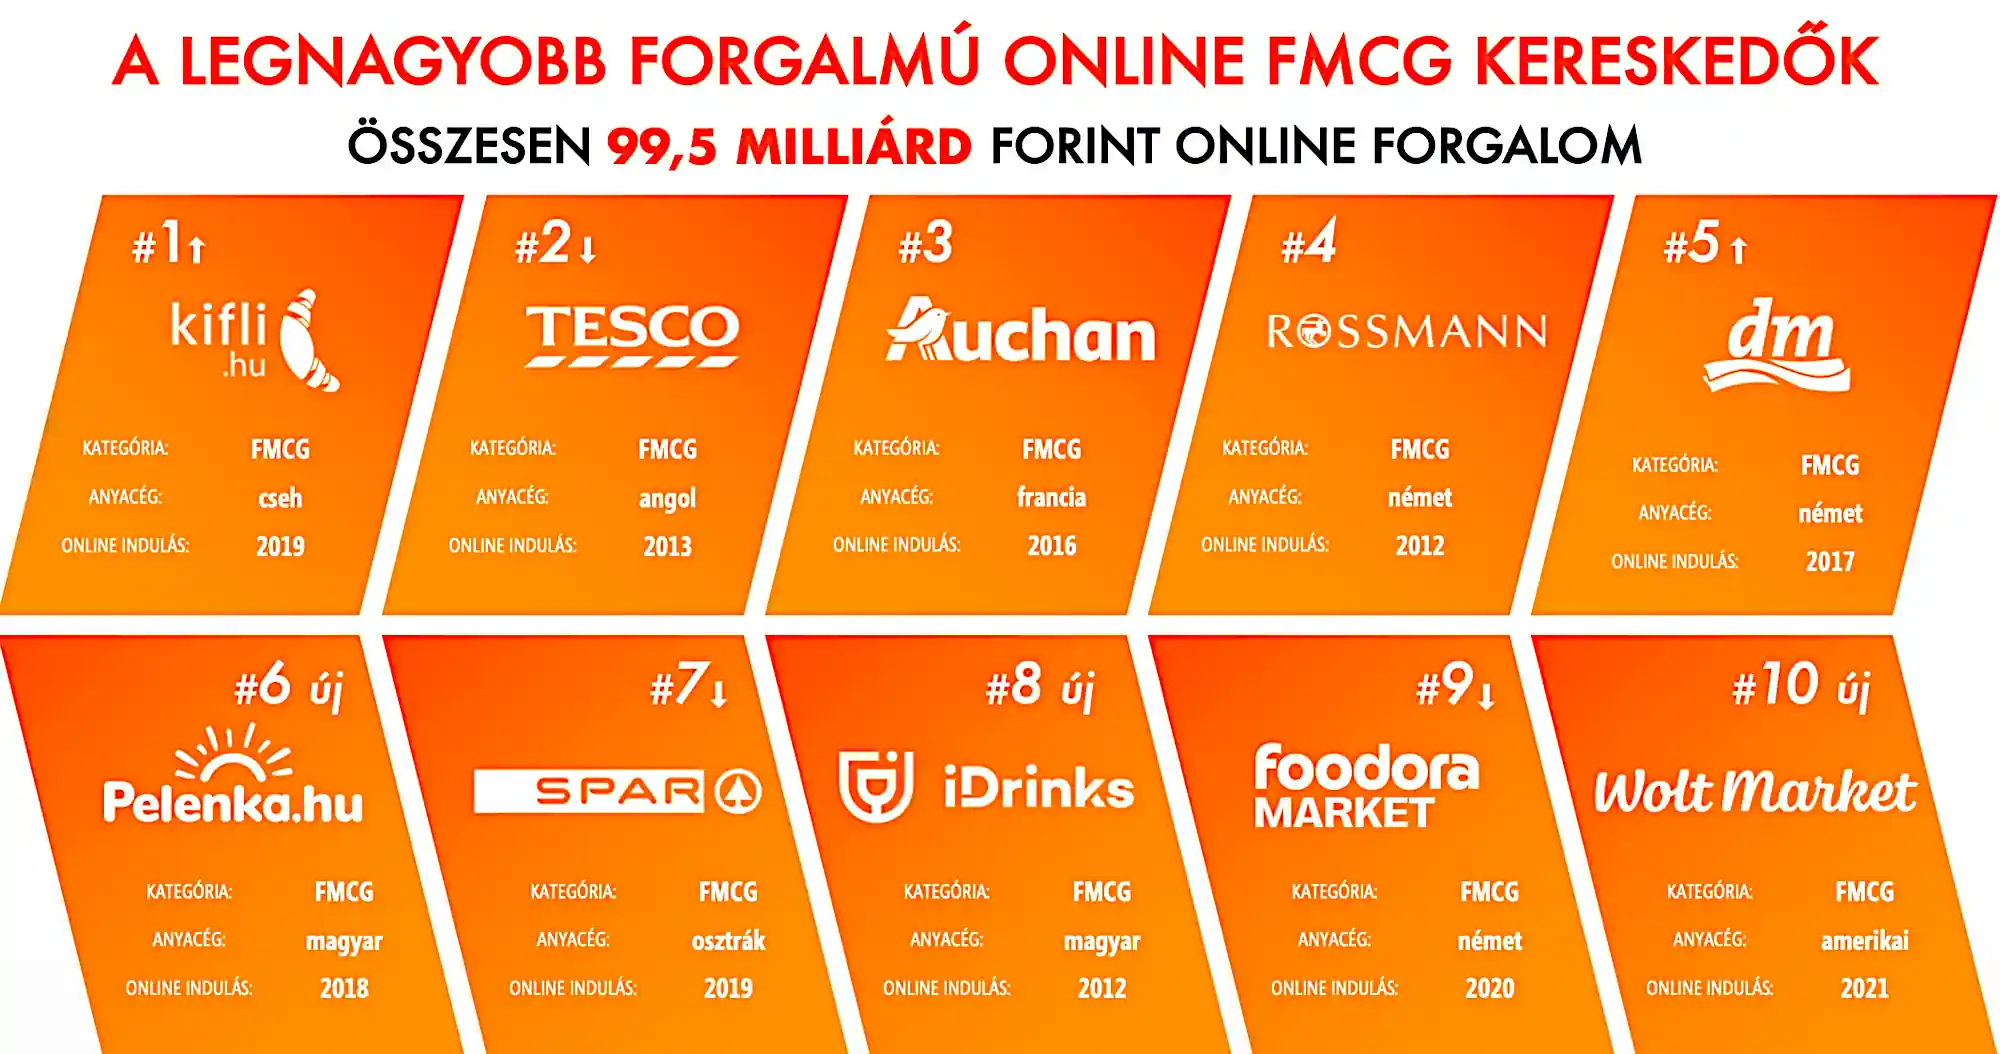 A legnagyobb forgalmú online FMCG kereskedők top 10-es rangsora